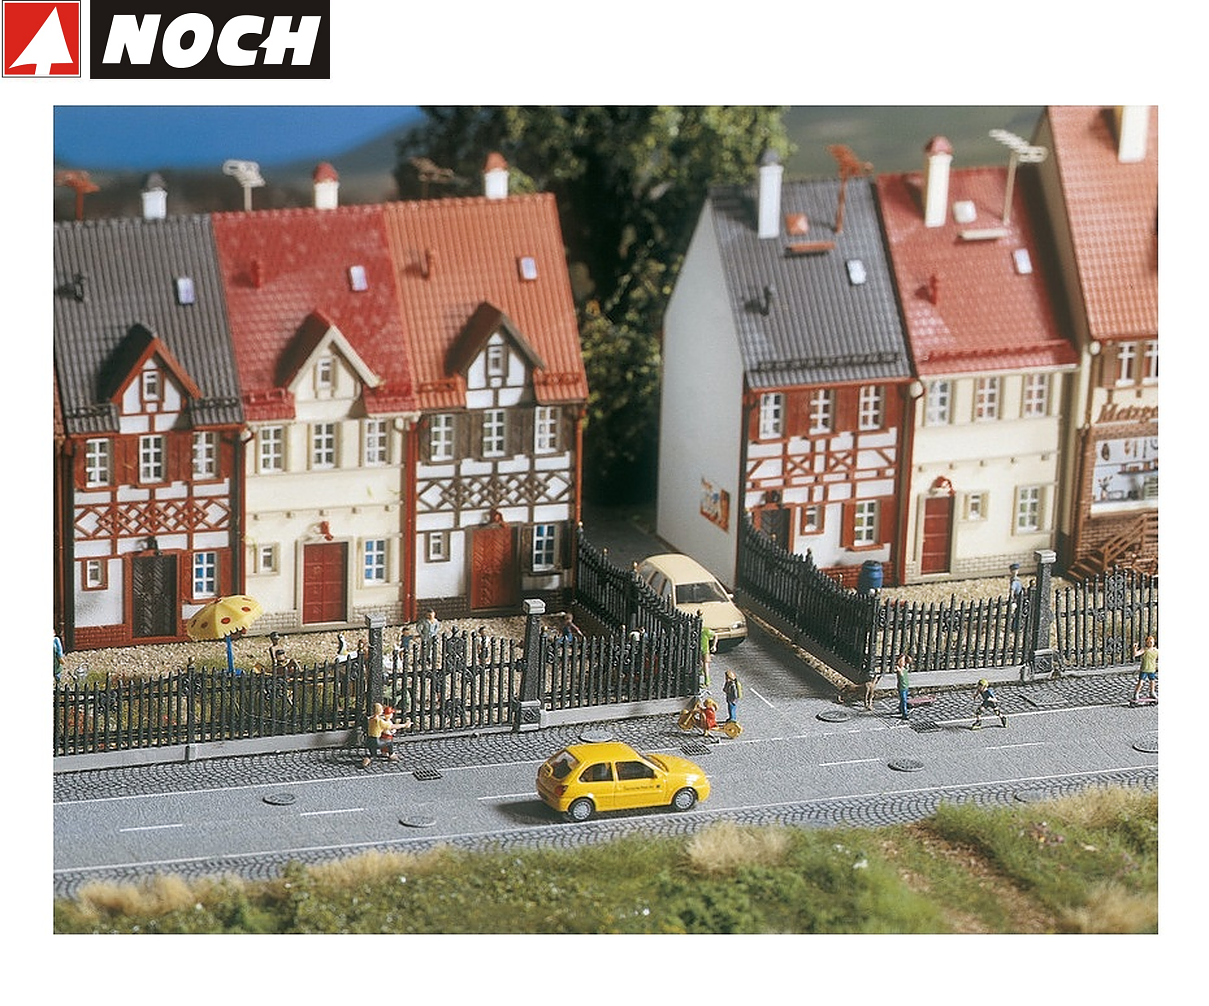 NOCH13100Villenzaun  Modell-Landschafsbau